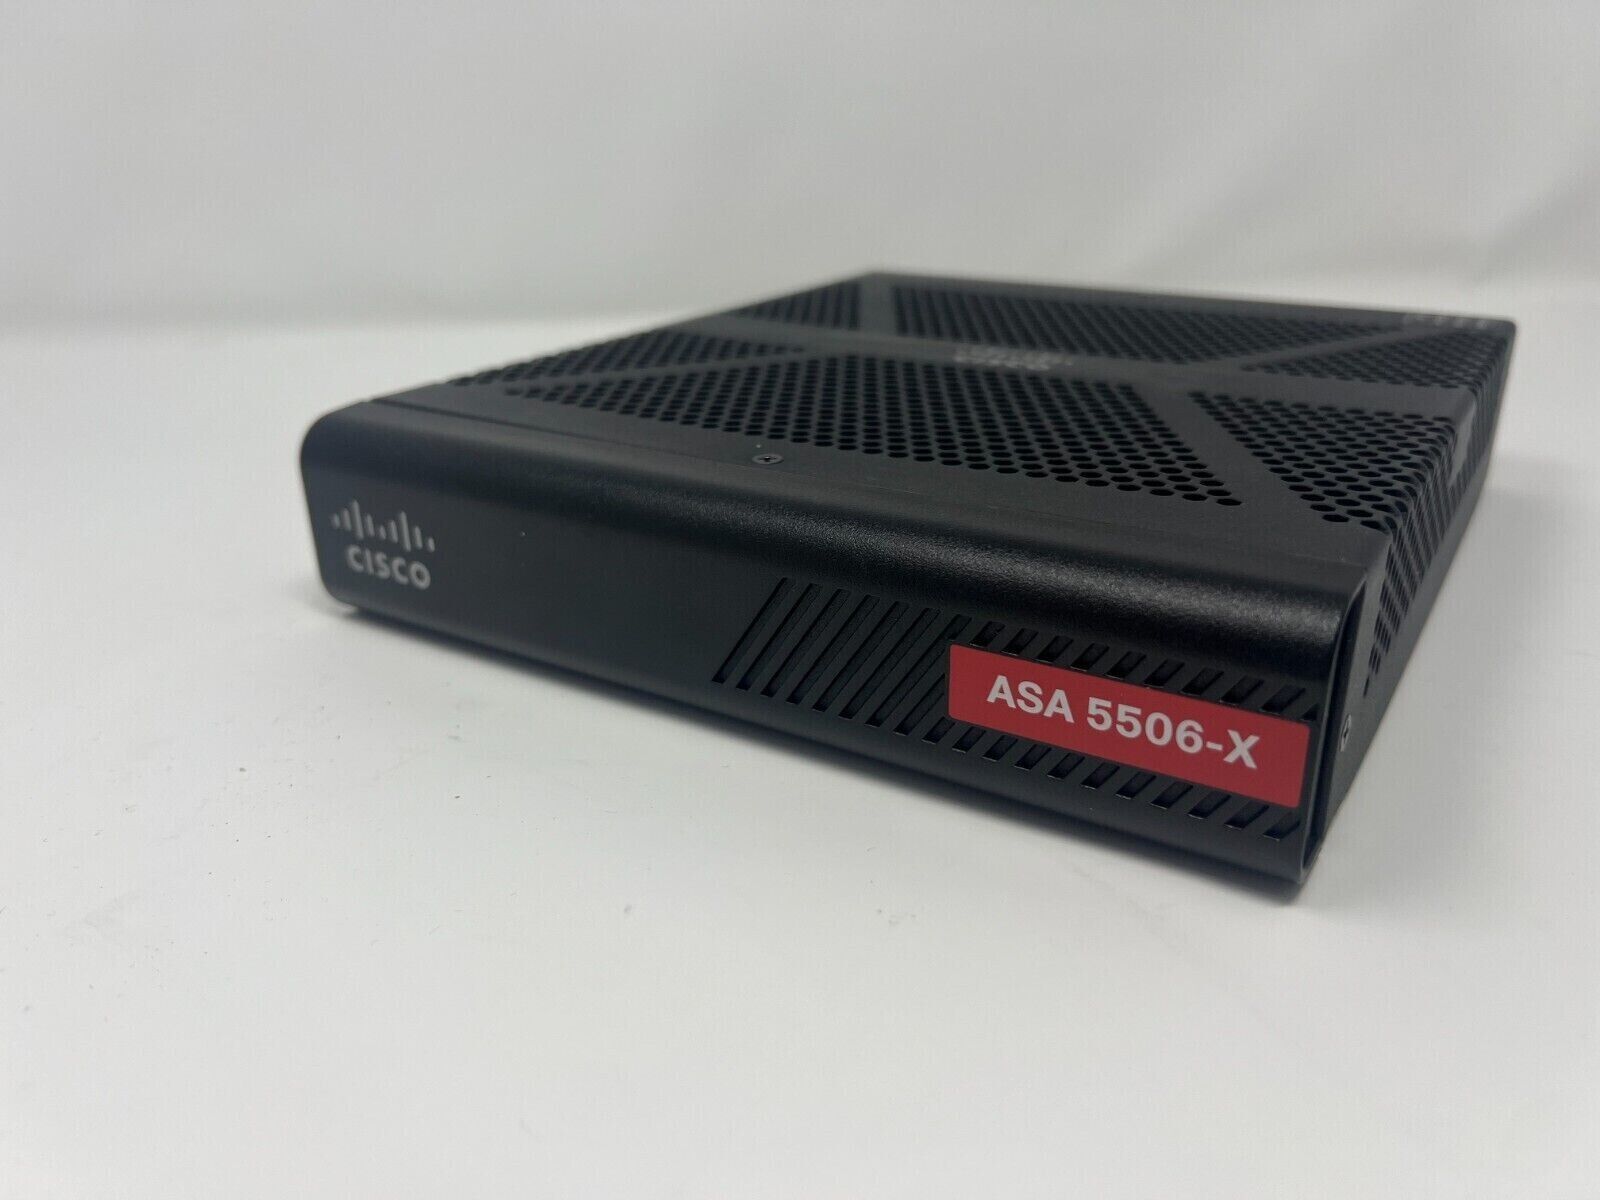 Cisco ASA 5506-X Network Security Firewall Appliance w/ Power Adapter